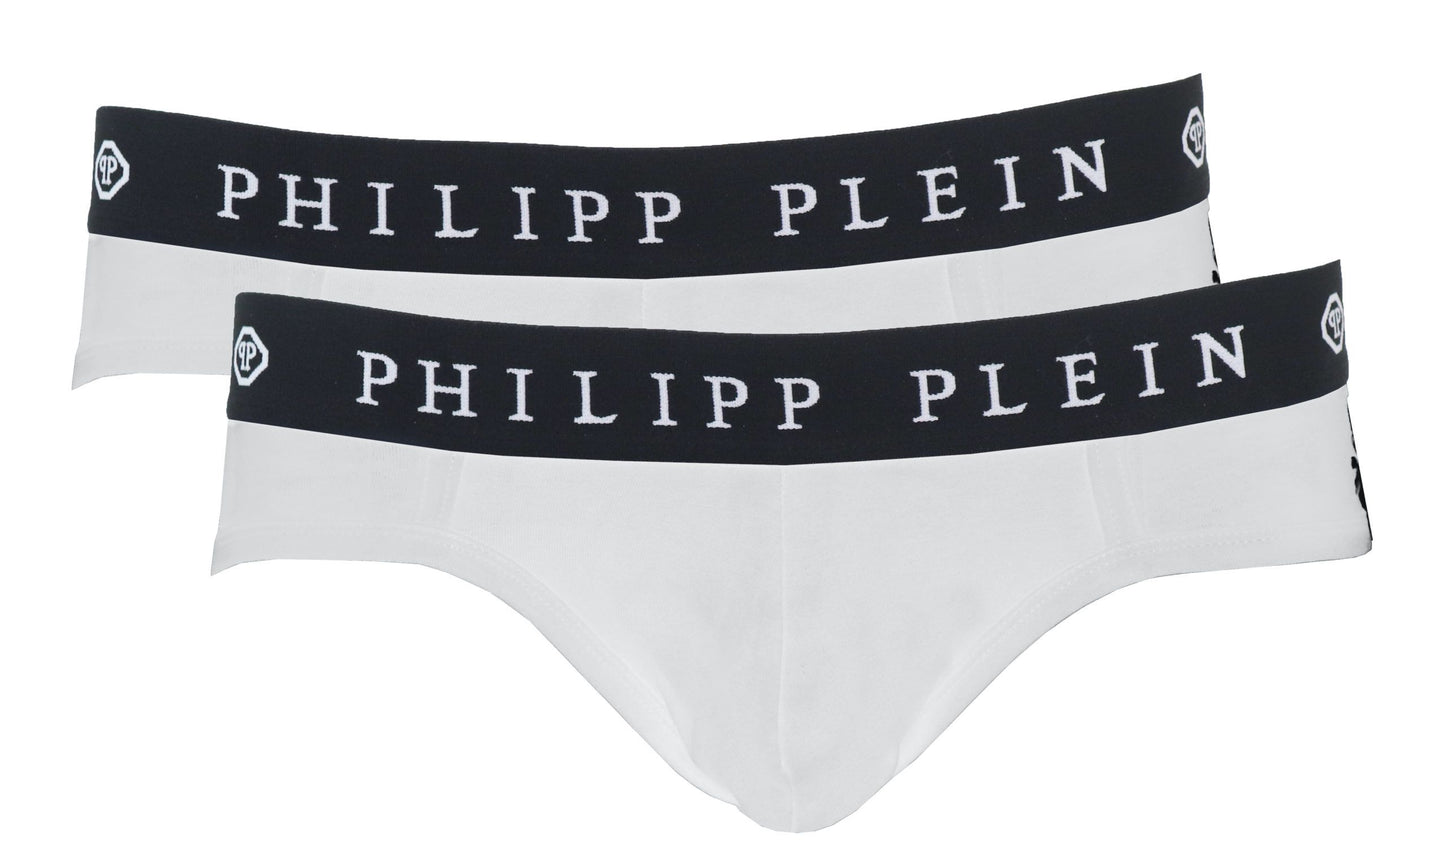 Whiteo Philipp Plein Boxer Shorts Underwear